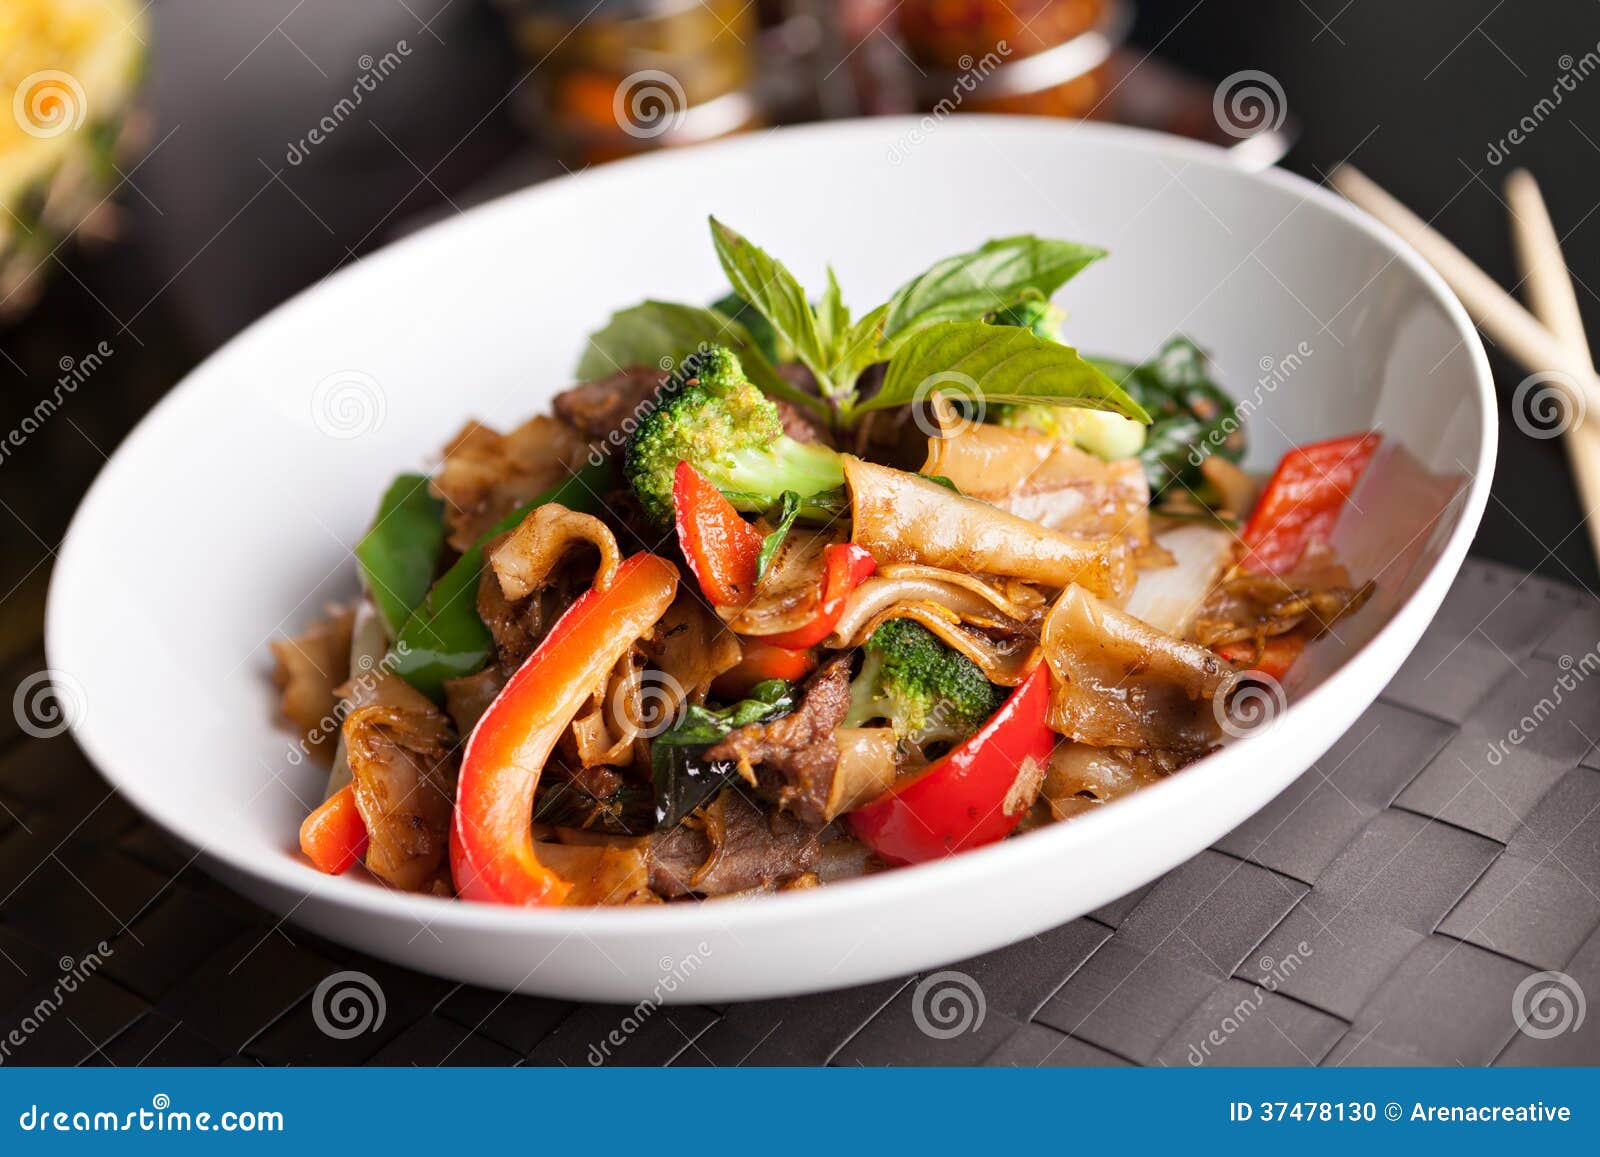 drunken noodle thai food